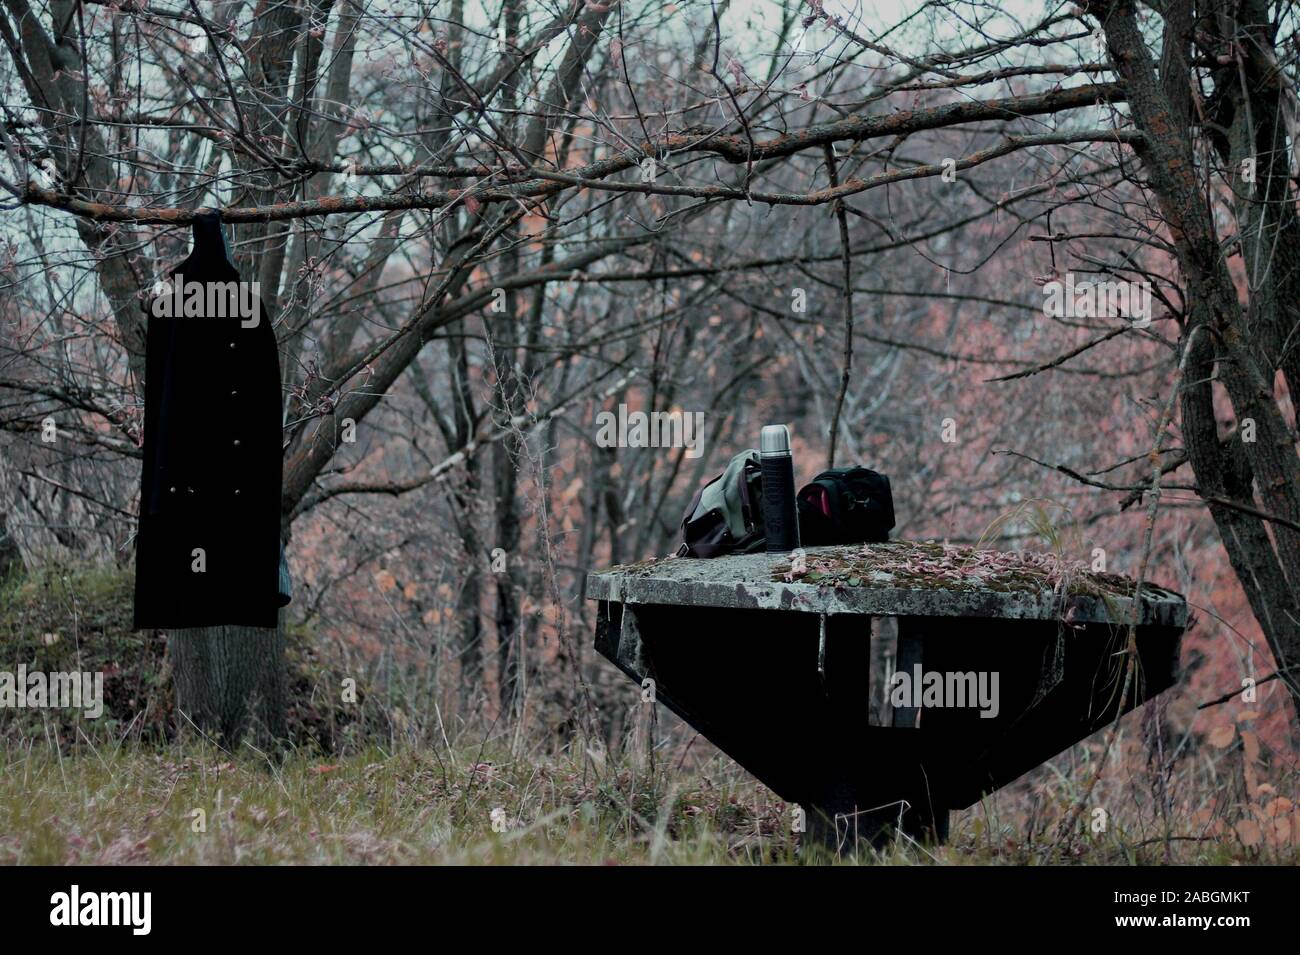 Notte scena picnic con mantello nero appesa sulla struttura ad albero sulla parte superiore di un bunker abbandonati nella parte anteriore della struttura spooky sfondo. Foto Stock